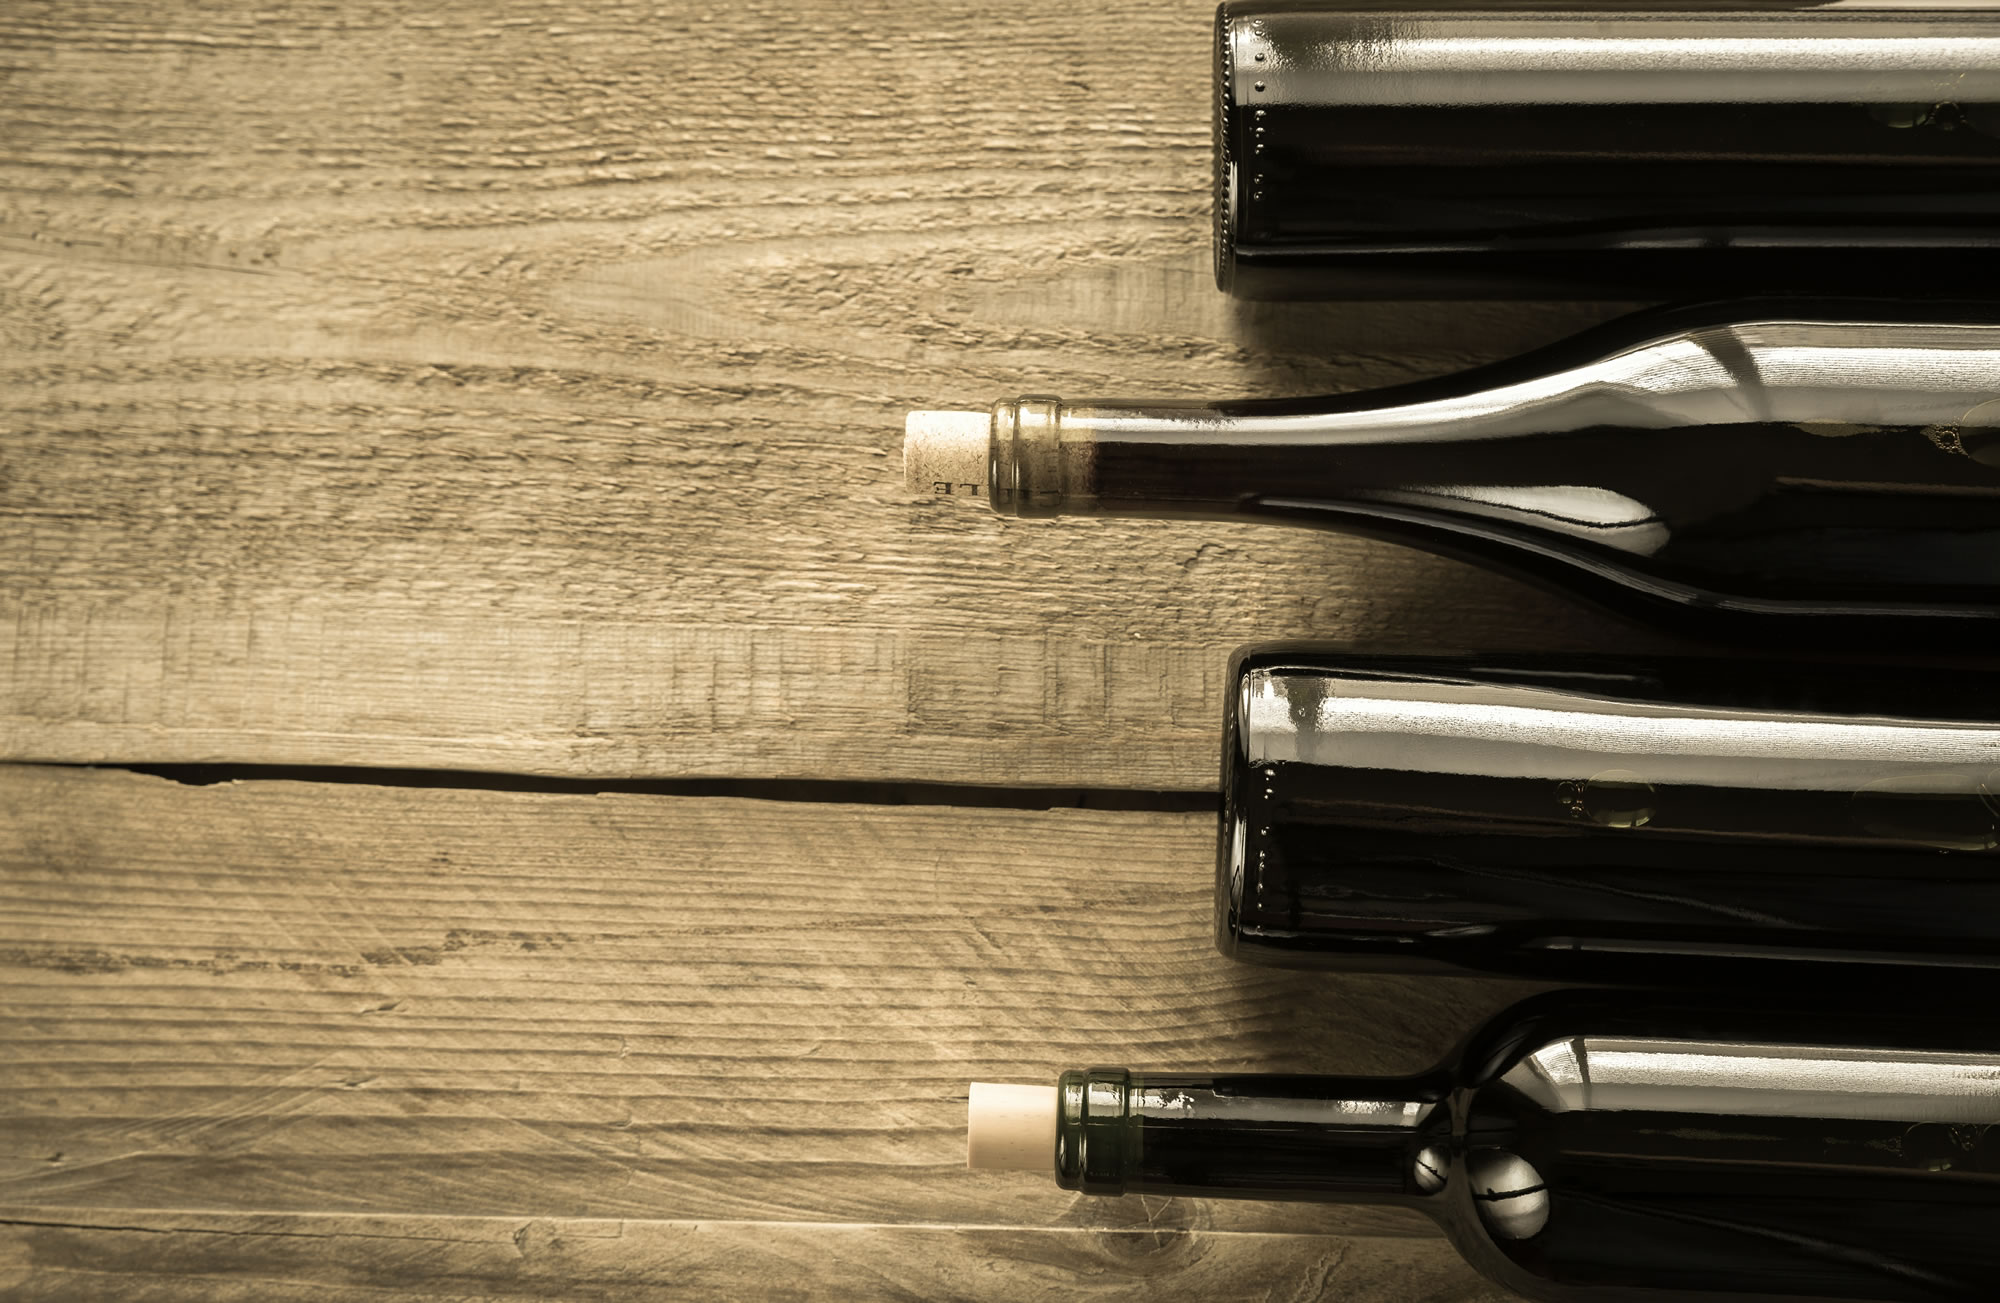 Learn How To Taste/Appreciate Wine